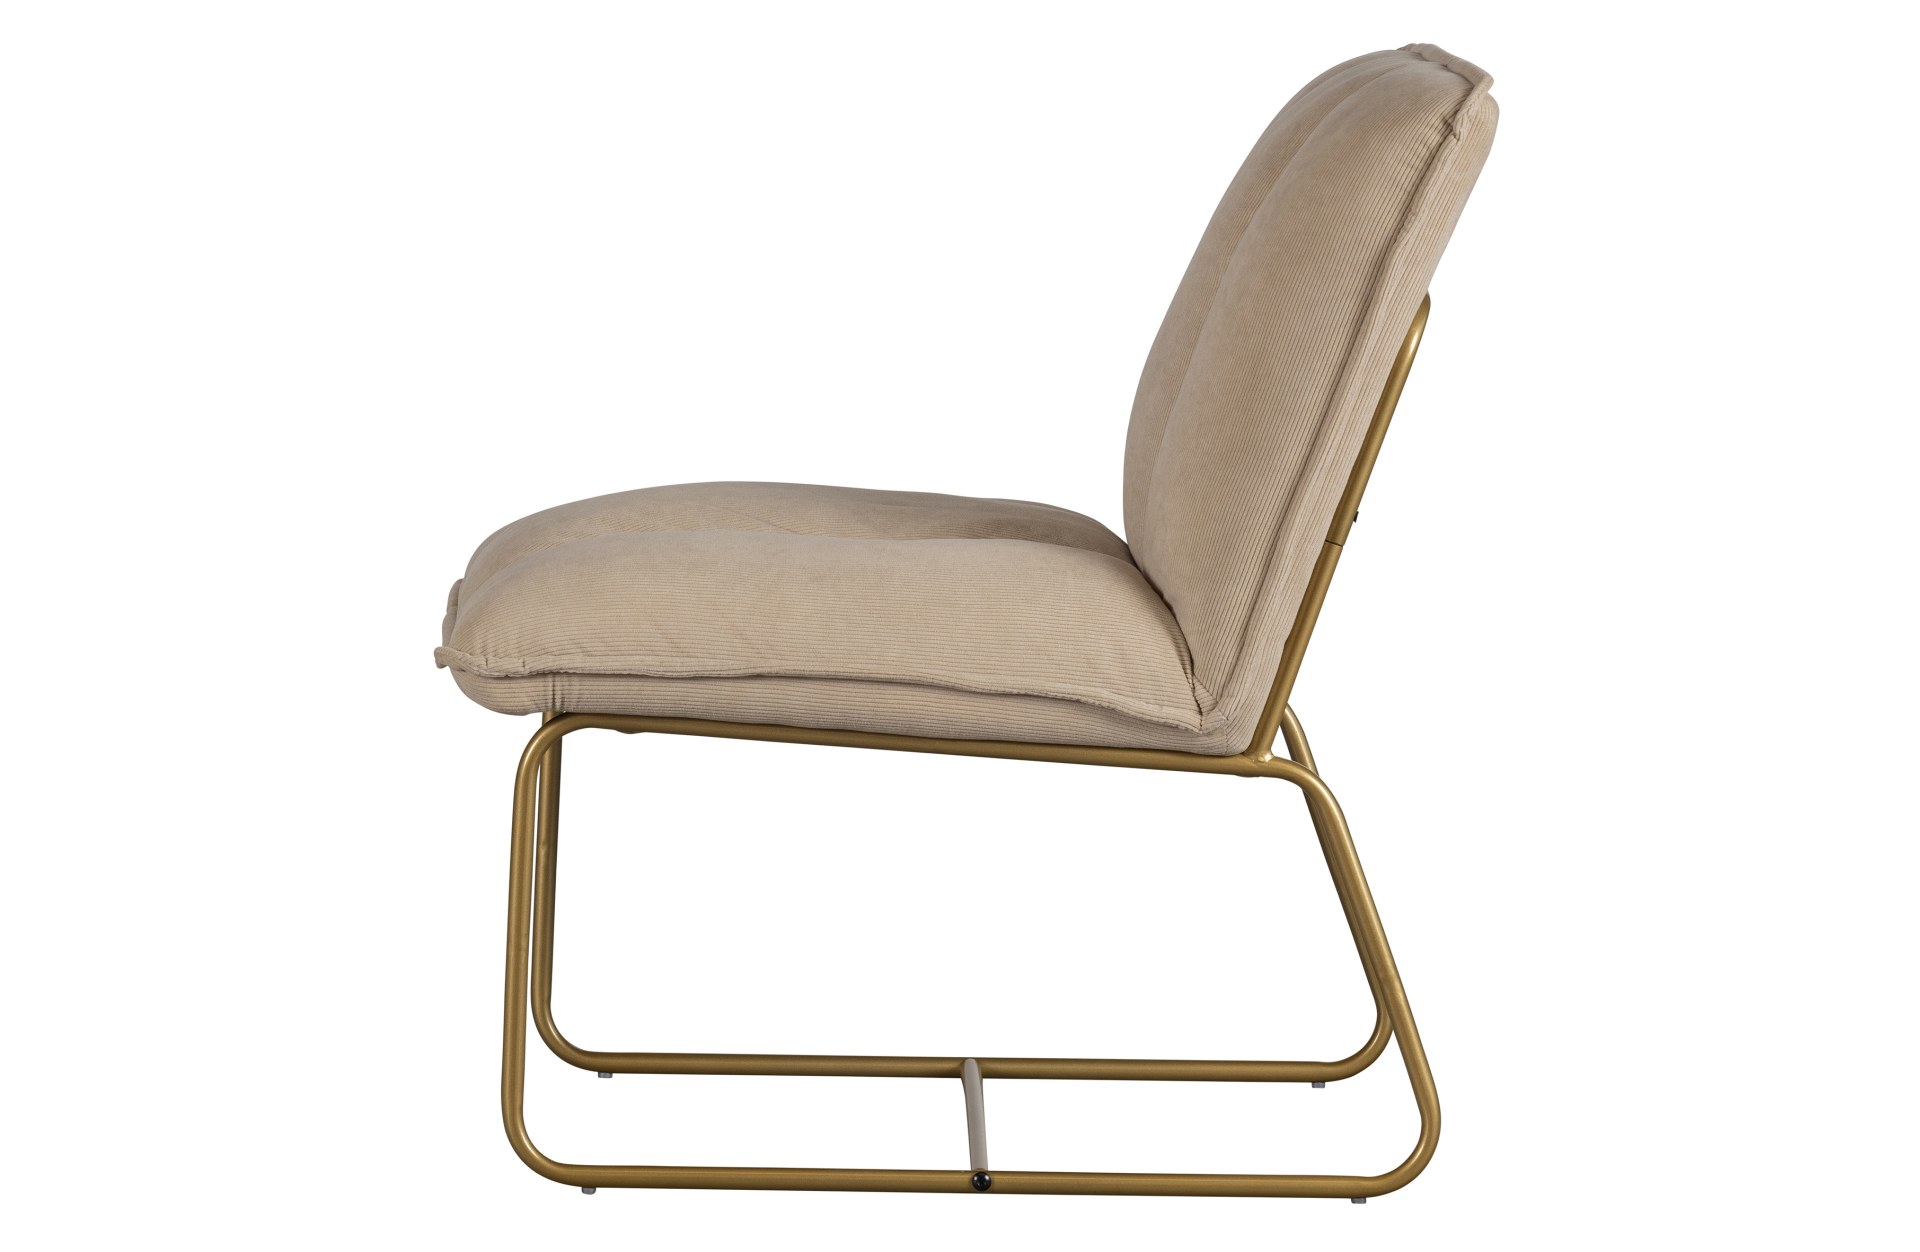 Der Sessel Fie wurde aus einem Ribcord Bezug gefertigt, welcher eine Sand Farbe hat. Das Gestell ist aus goldfarbenem Metall gefertigt, was dem Stuhl ein luxuriöses Aussehen verleiht.